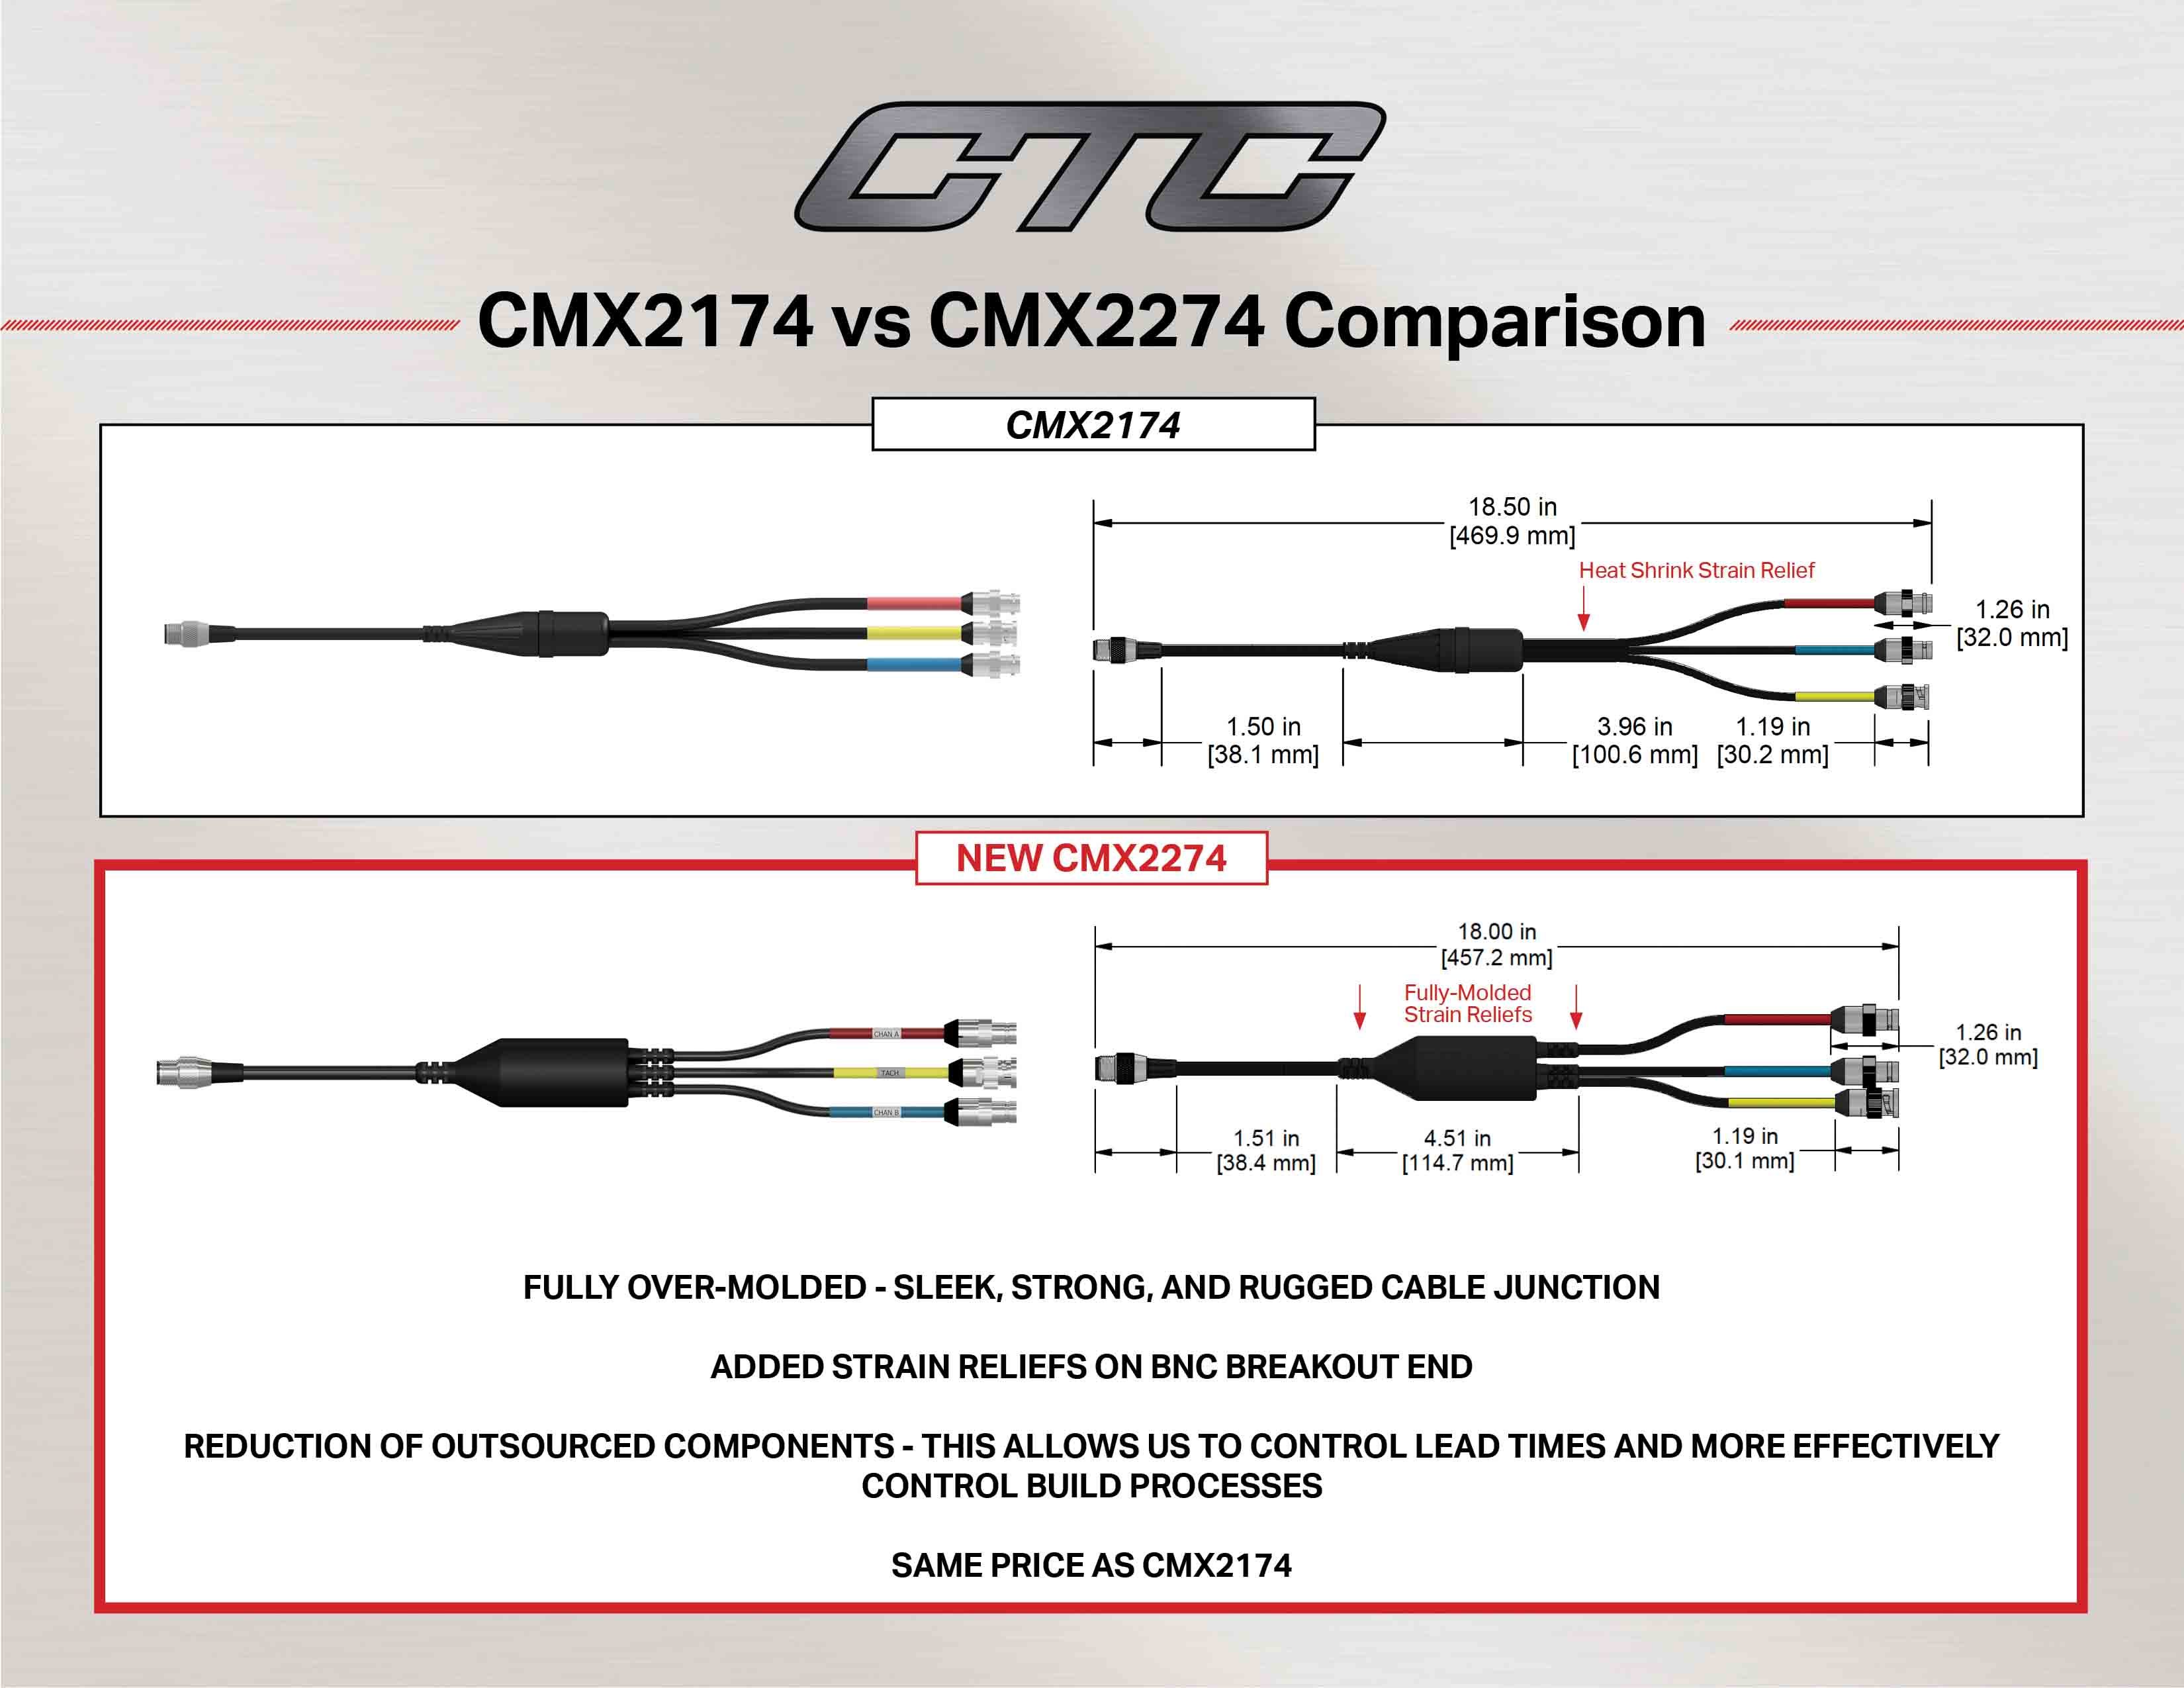 CMX2174 vs CMX2274 cable comparison diagram and measurements.